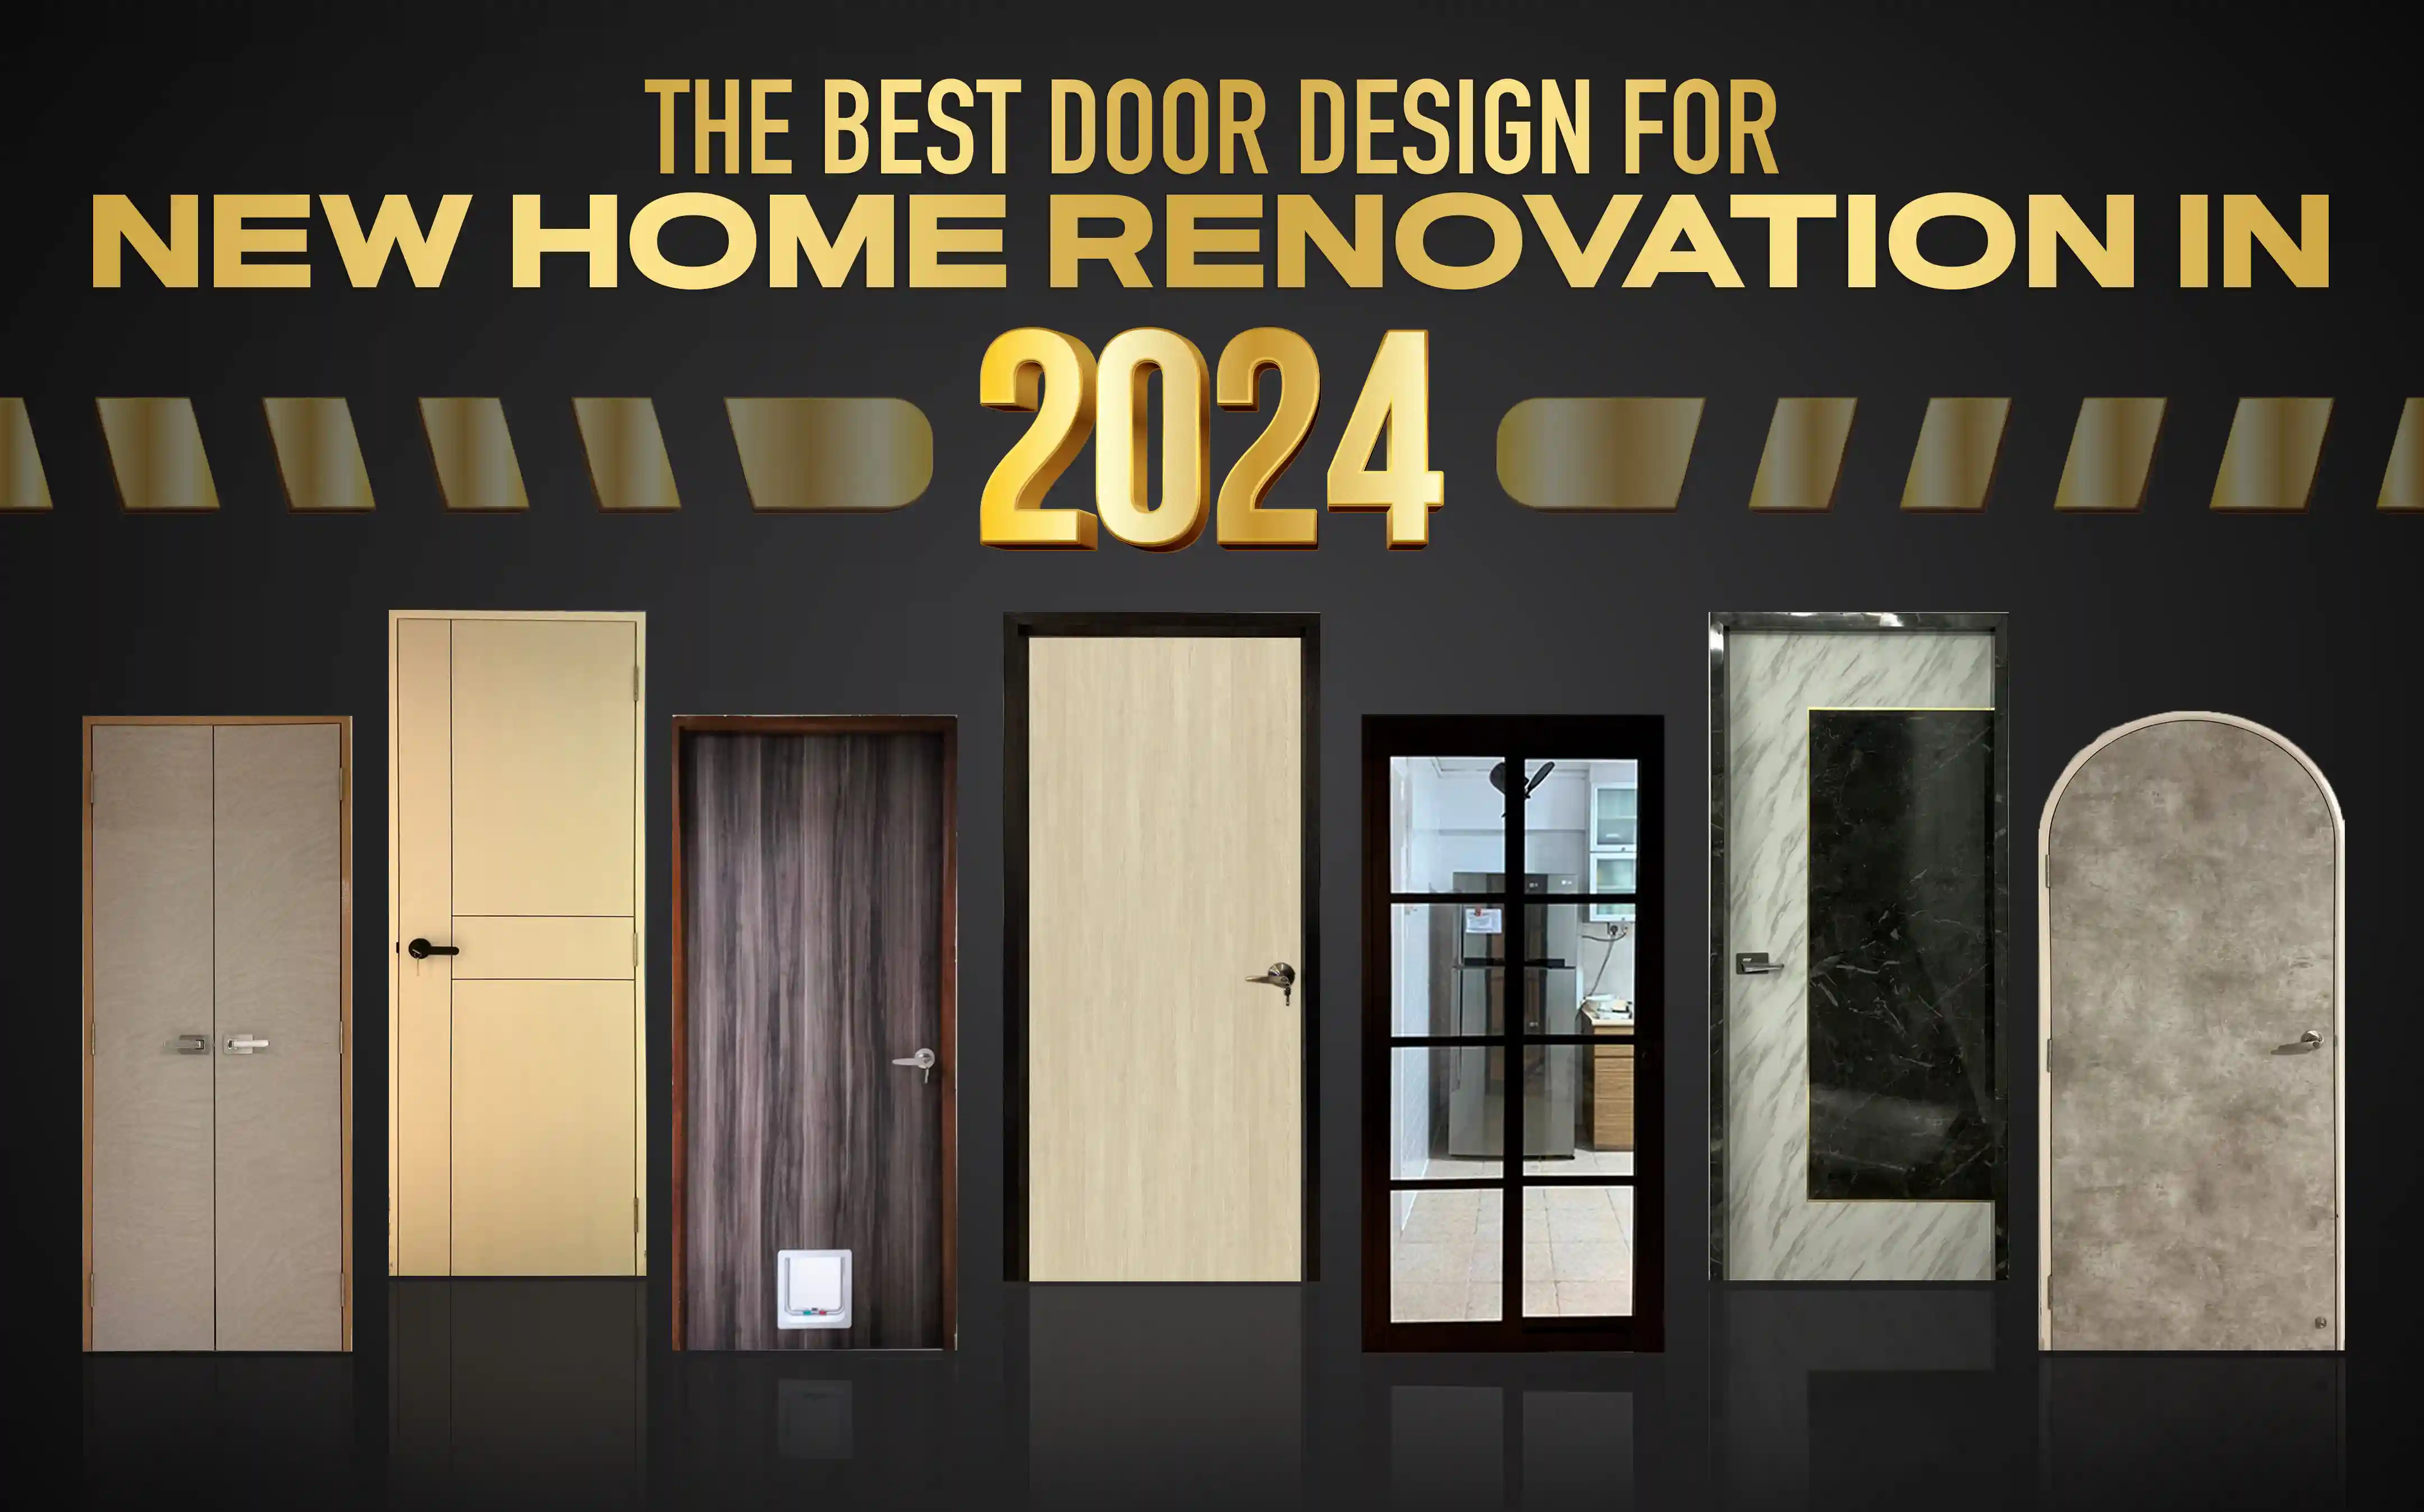 Top 2024 Door Design Trends For Home